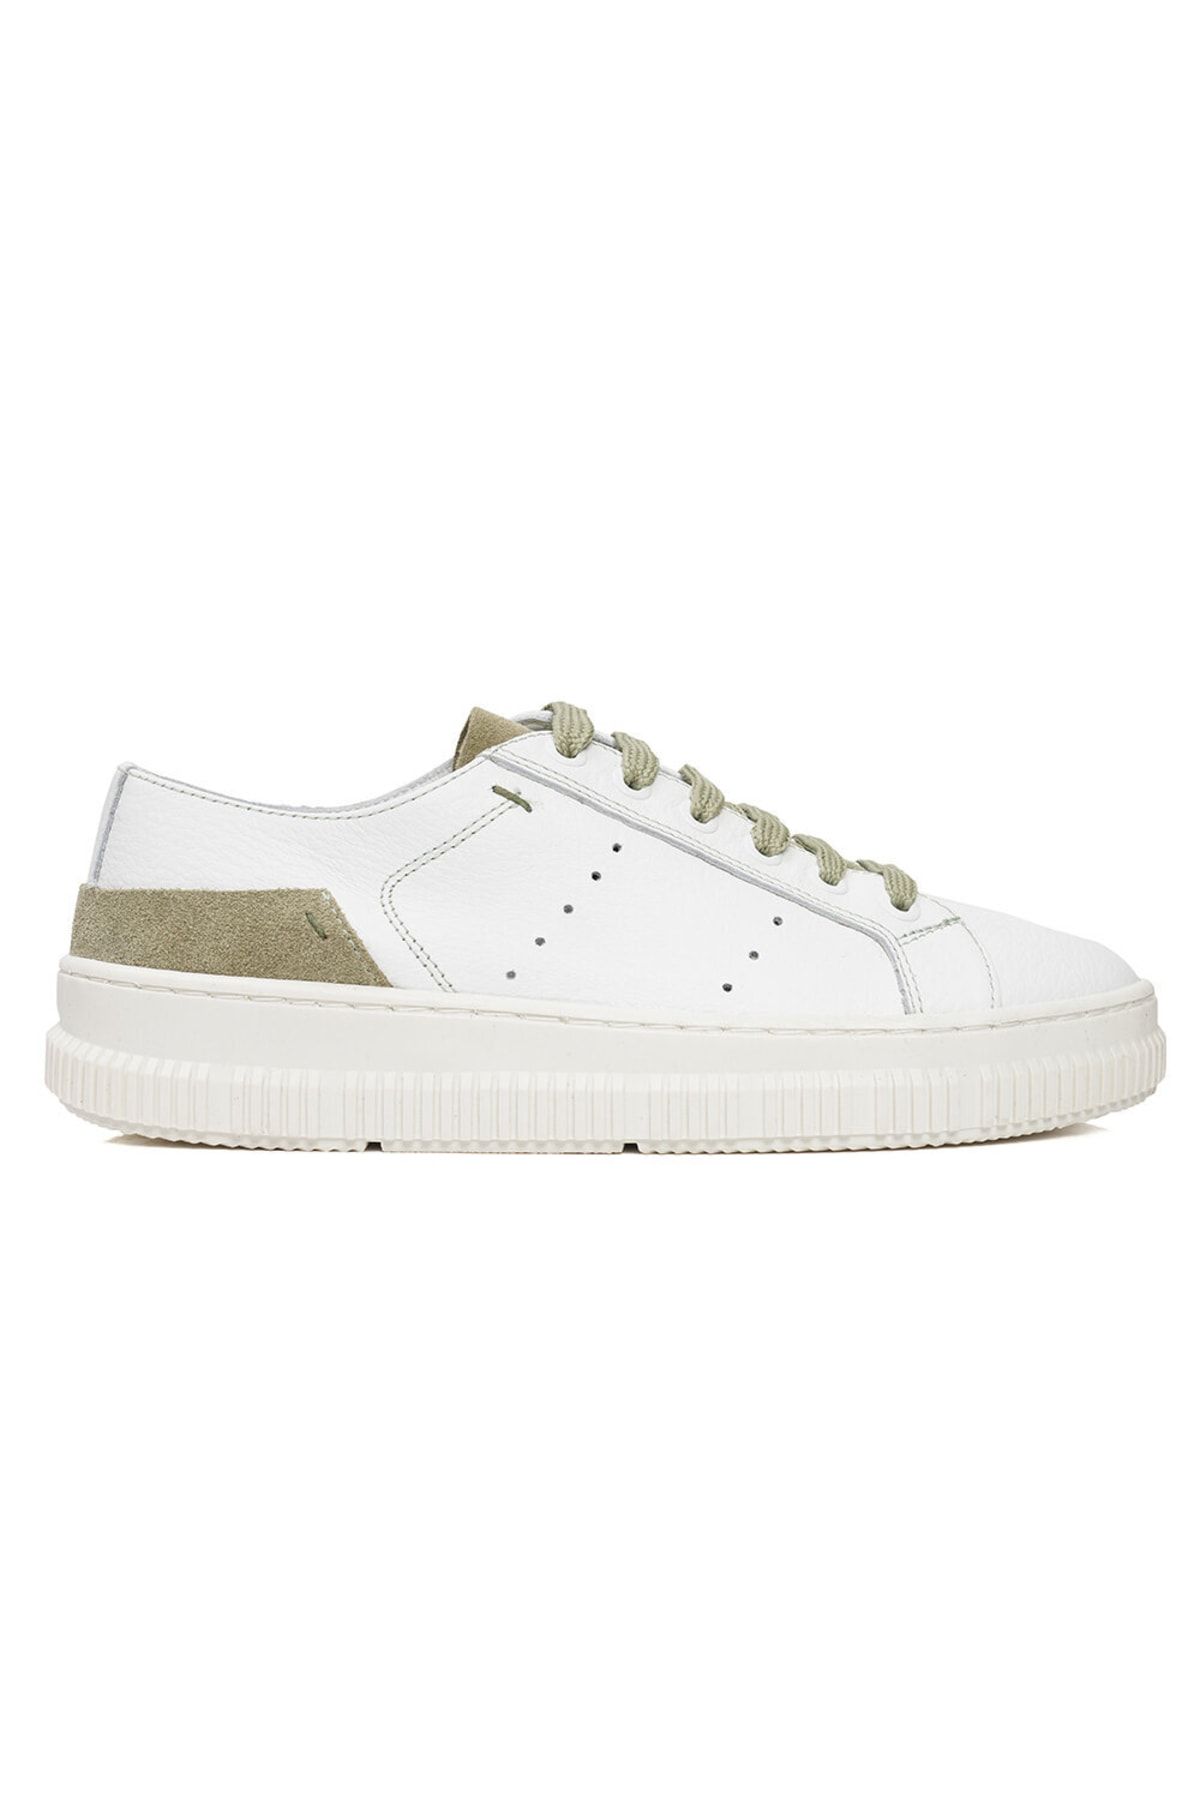 Greyder Kadın Beyaz Olive Hakiki Deri Sneaker Ayakkabı 3y2ca50753